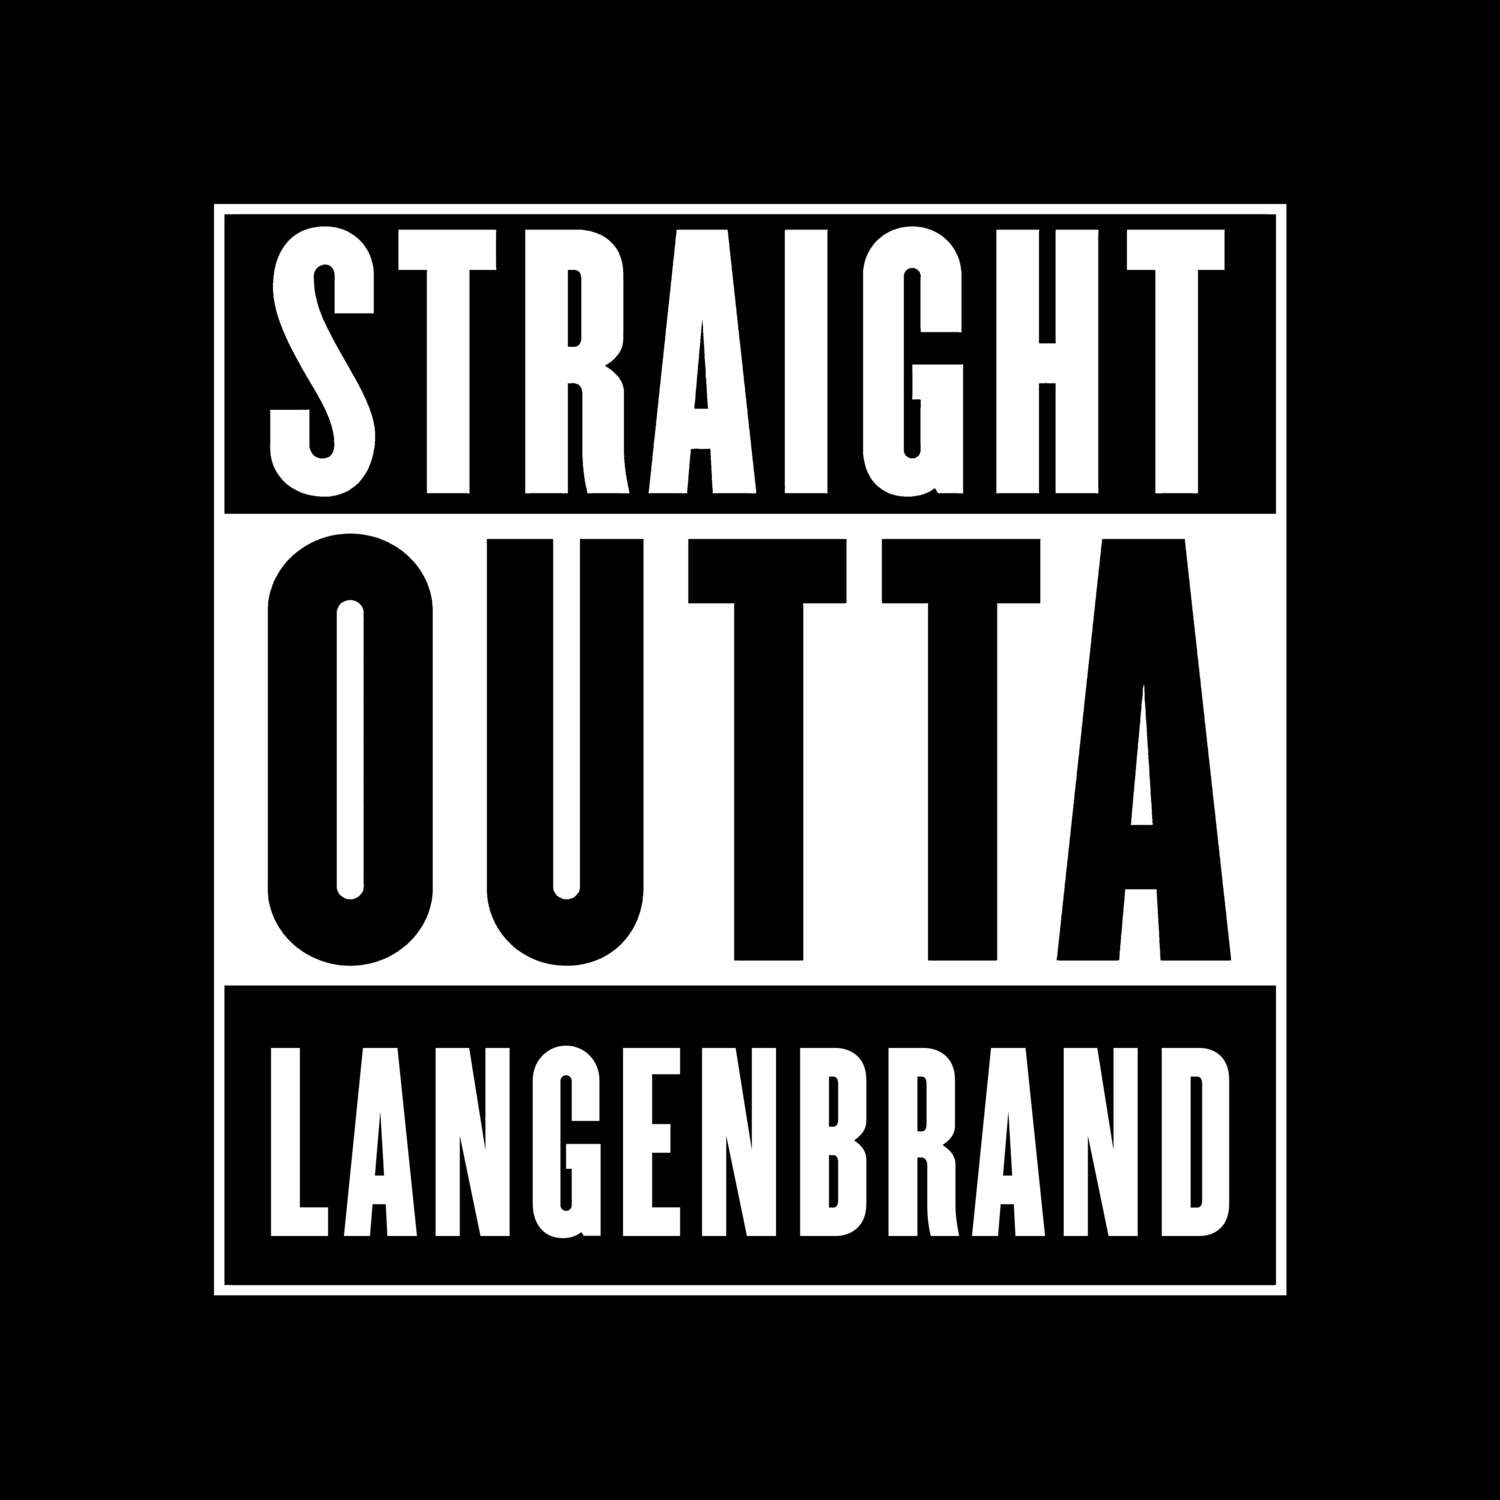 Langenbrand T-Shirt »Straight Outta«